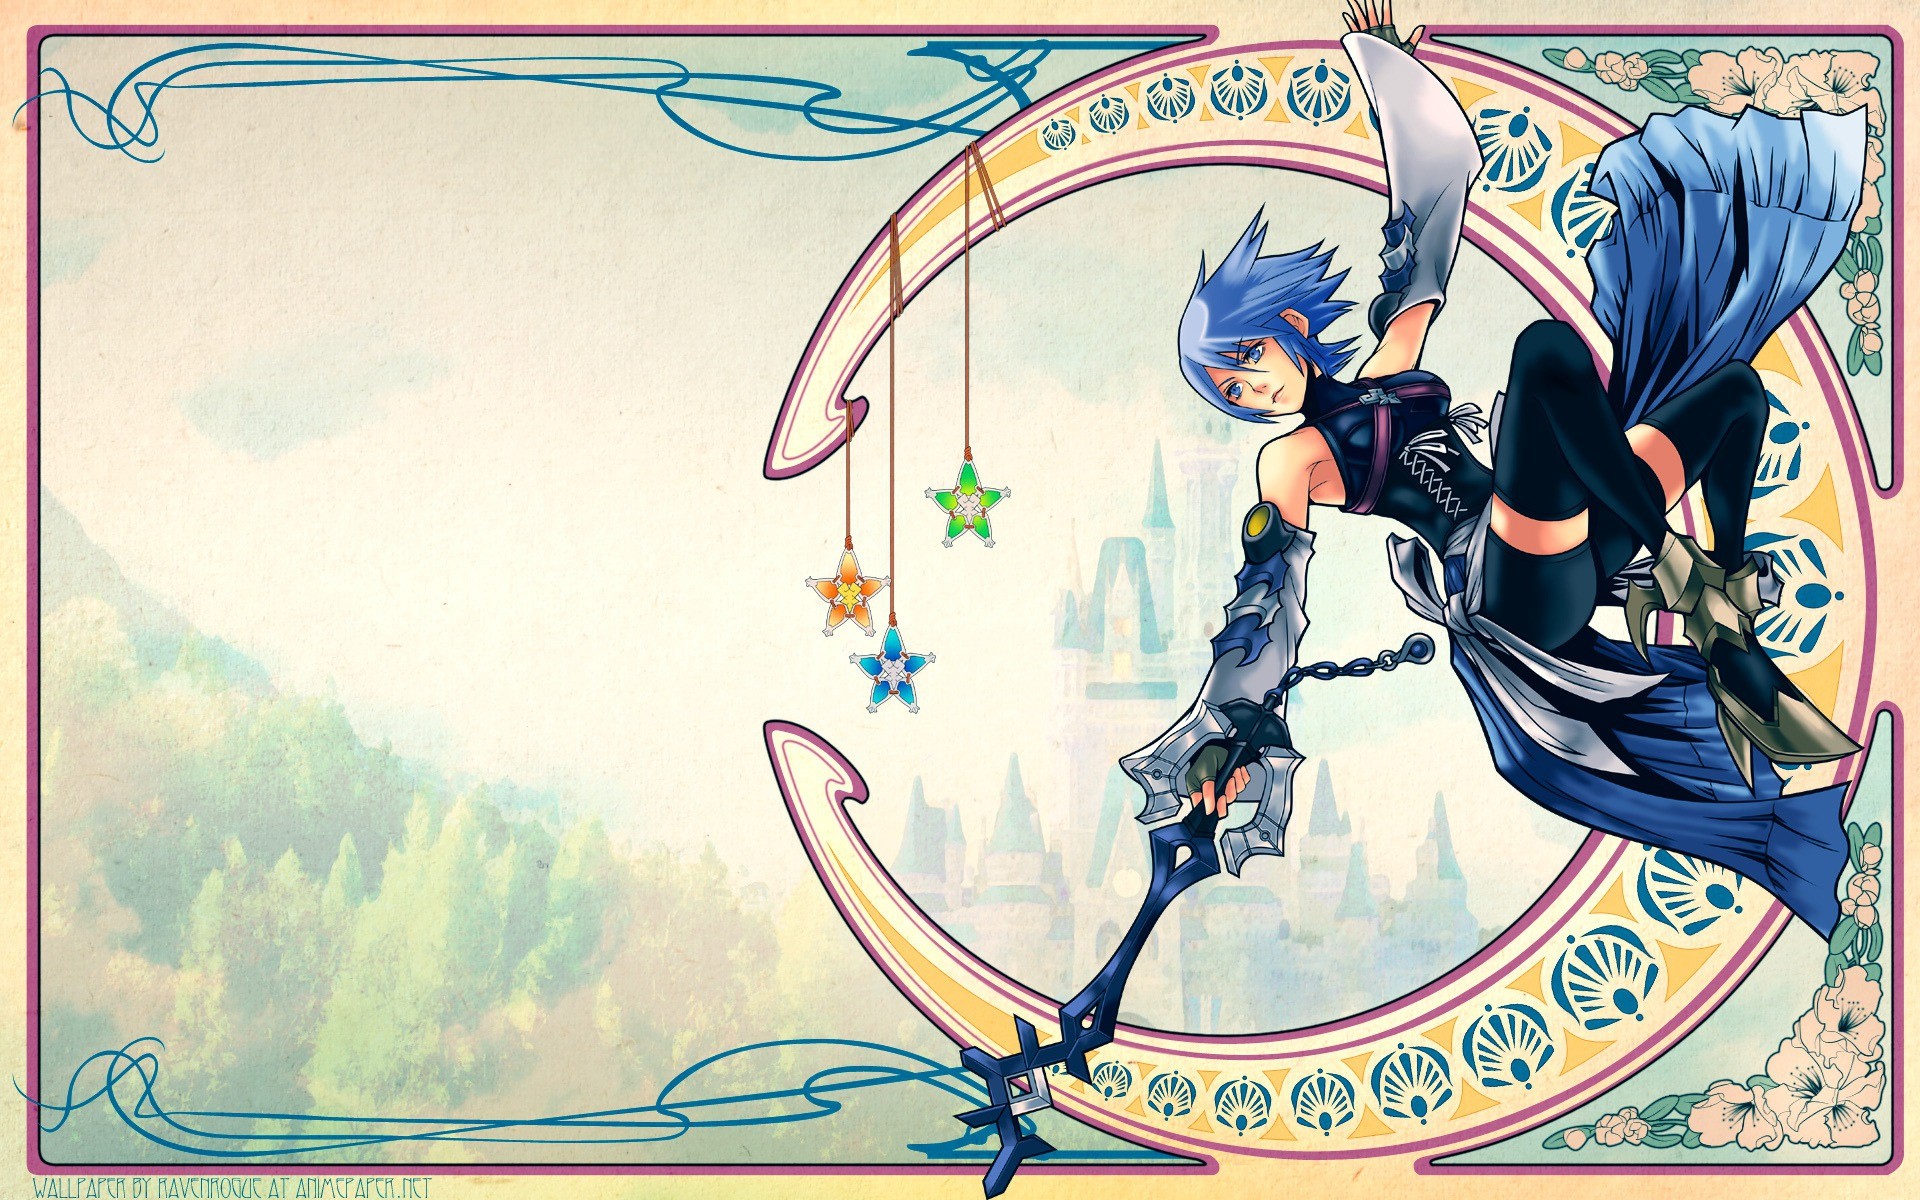 Aqua Kingdom Hearts download Aqua Kingdom Hearts image